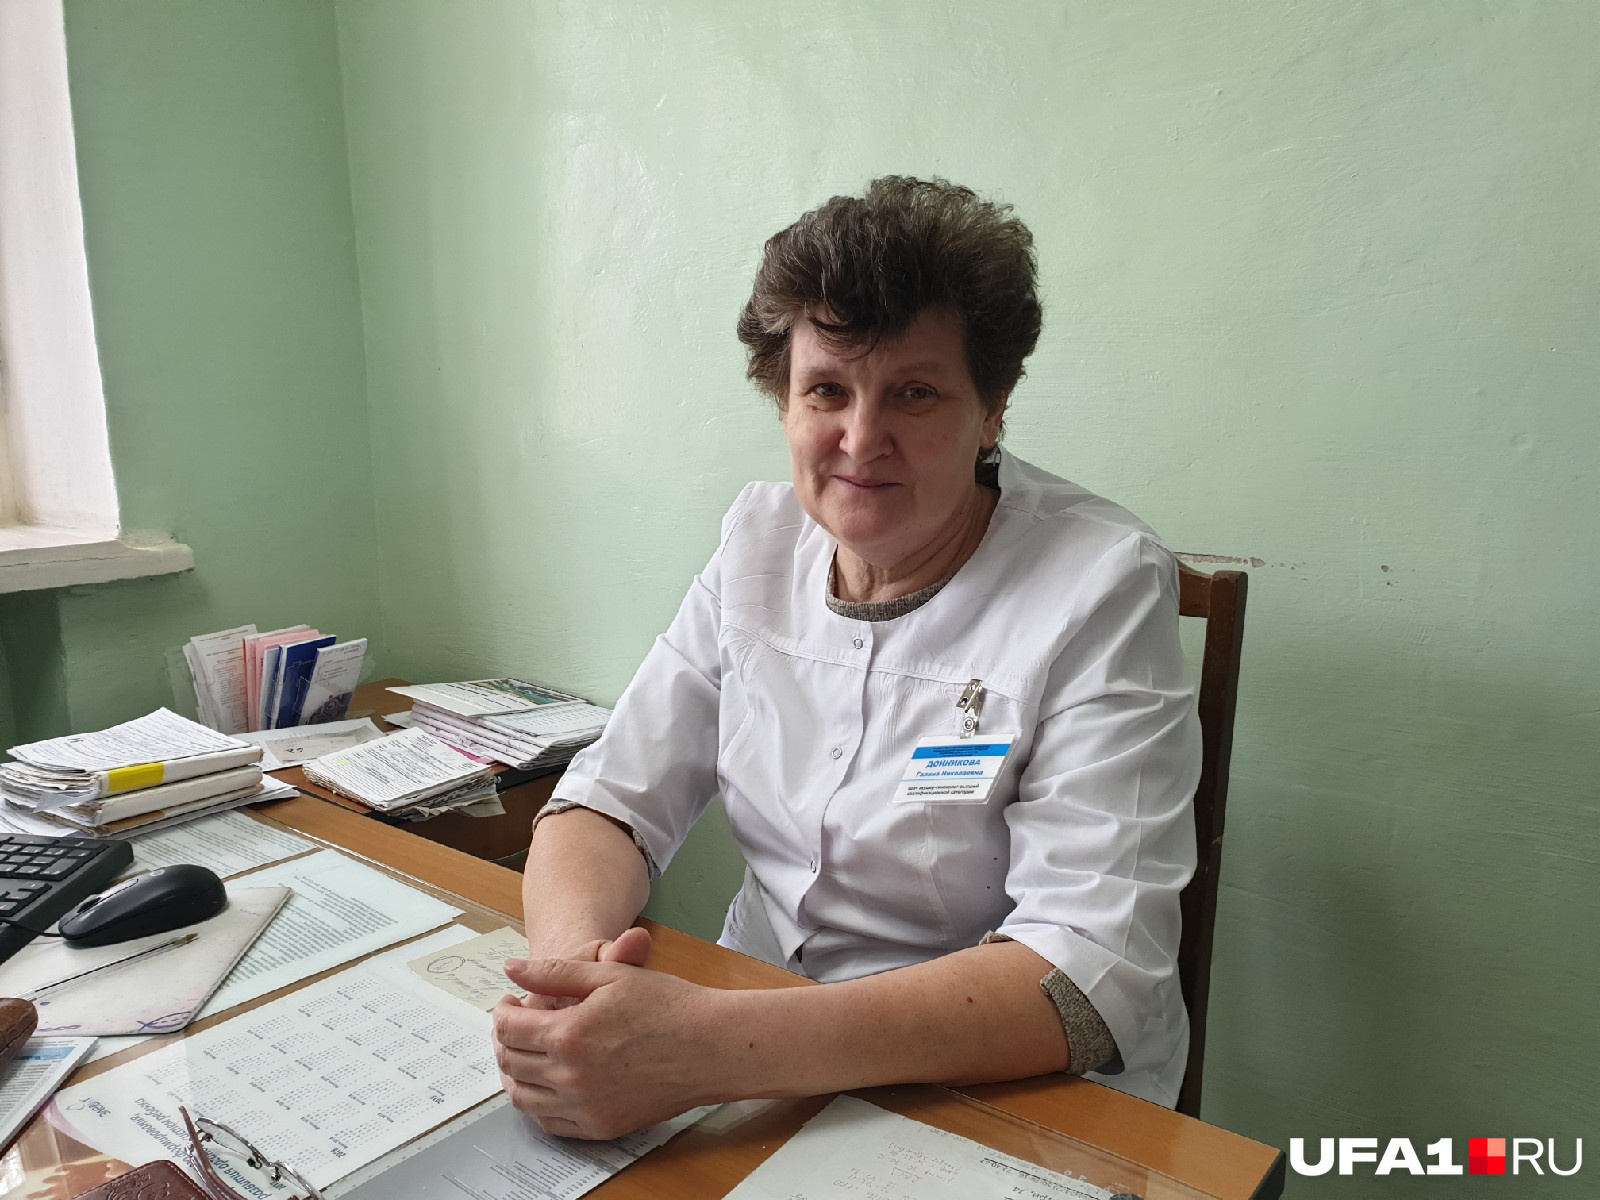 Галина Дойникова говорит, что врачи на одну ставку зарабатывают 20–23 тысячи рублей